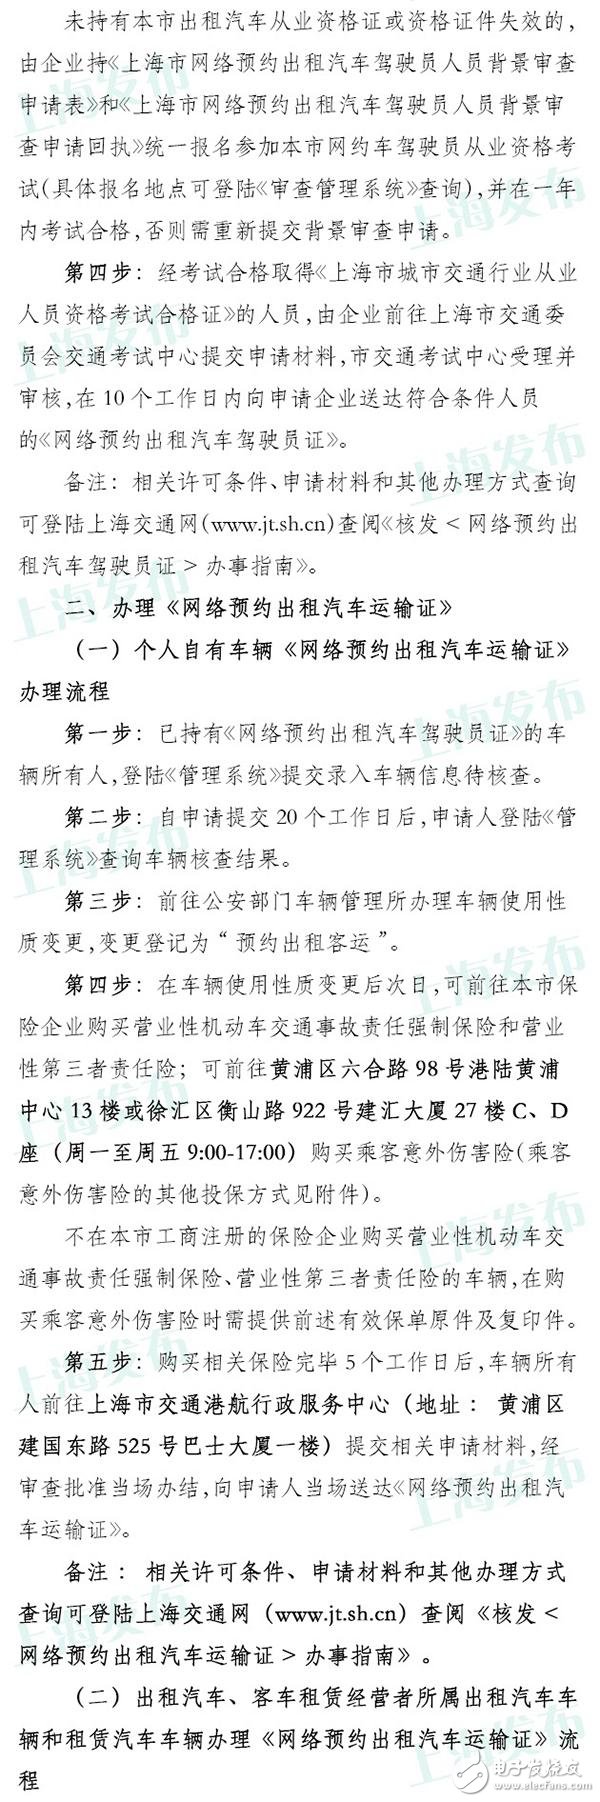 上海网约车申请今日已开放 具体流程公布无从业资格需考试